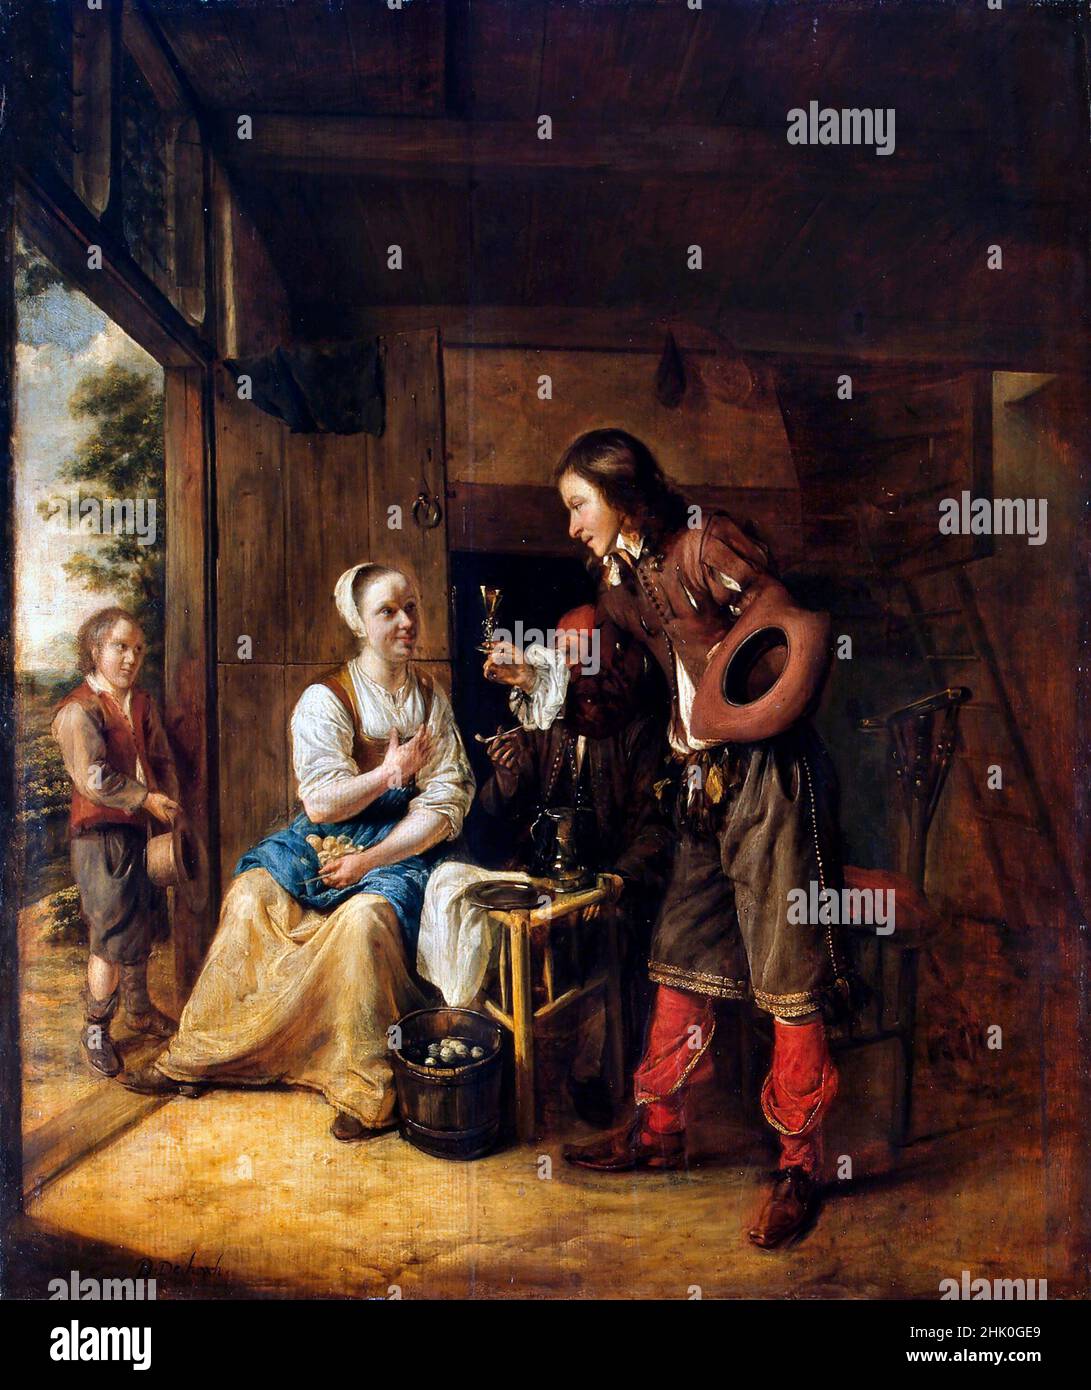 Pieter de Hooch.Peinture intitulée "un soldat offrant à une femme un verre de vin" par le peintre néerlandais de l'âge d'or, Pieter de Hooch (1629-1684), huile sur panneau, c.1653 Banque D'Images